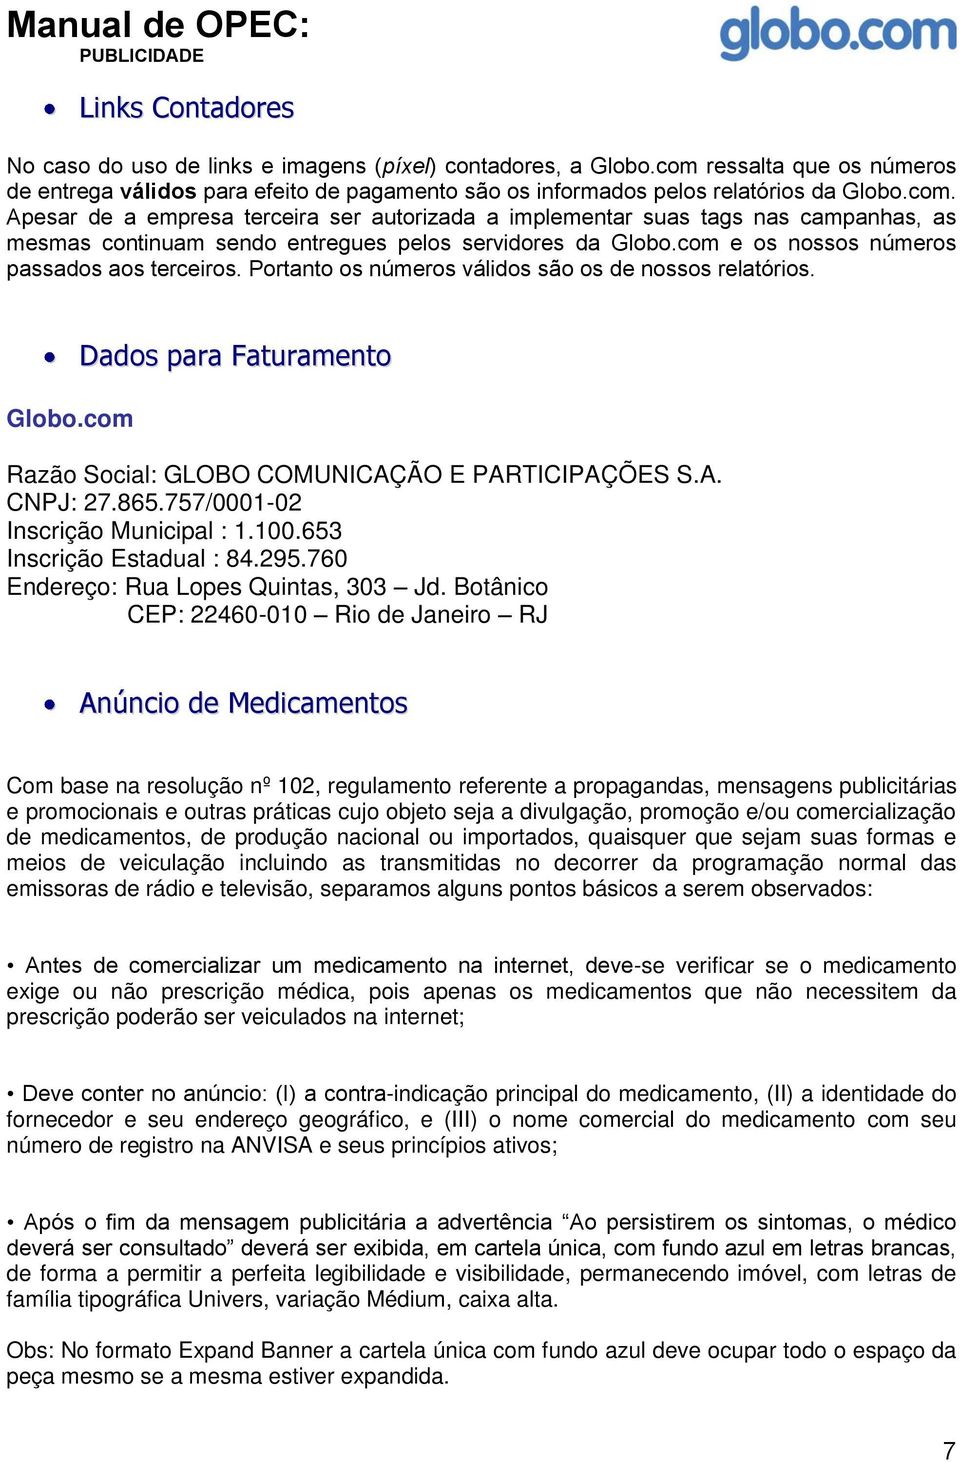 Apesar de a empresa terceira ser autorizada a implementar suas tags nas campanhas, as mesmas continuam sendo entregues pelos servidores da Globo.com e os nossos números passados aos terceiros.